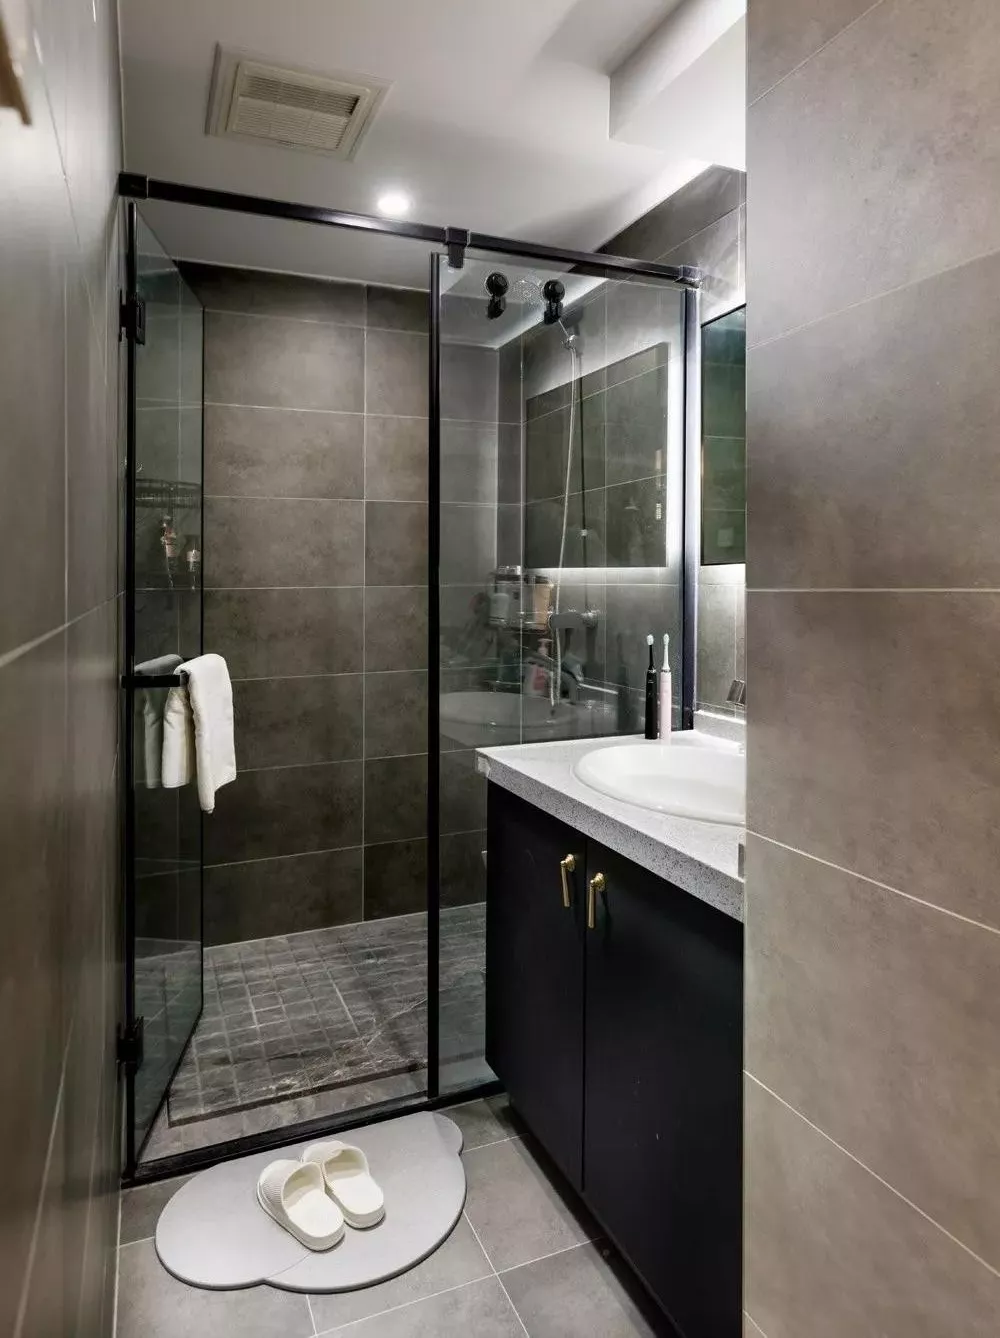 卫生间单独划分出了淋浴间,用玻璃门来做干湿分离,还是比较经典实用